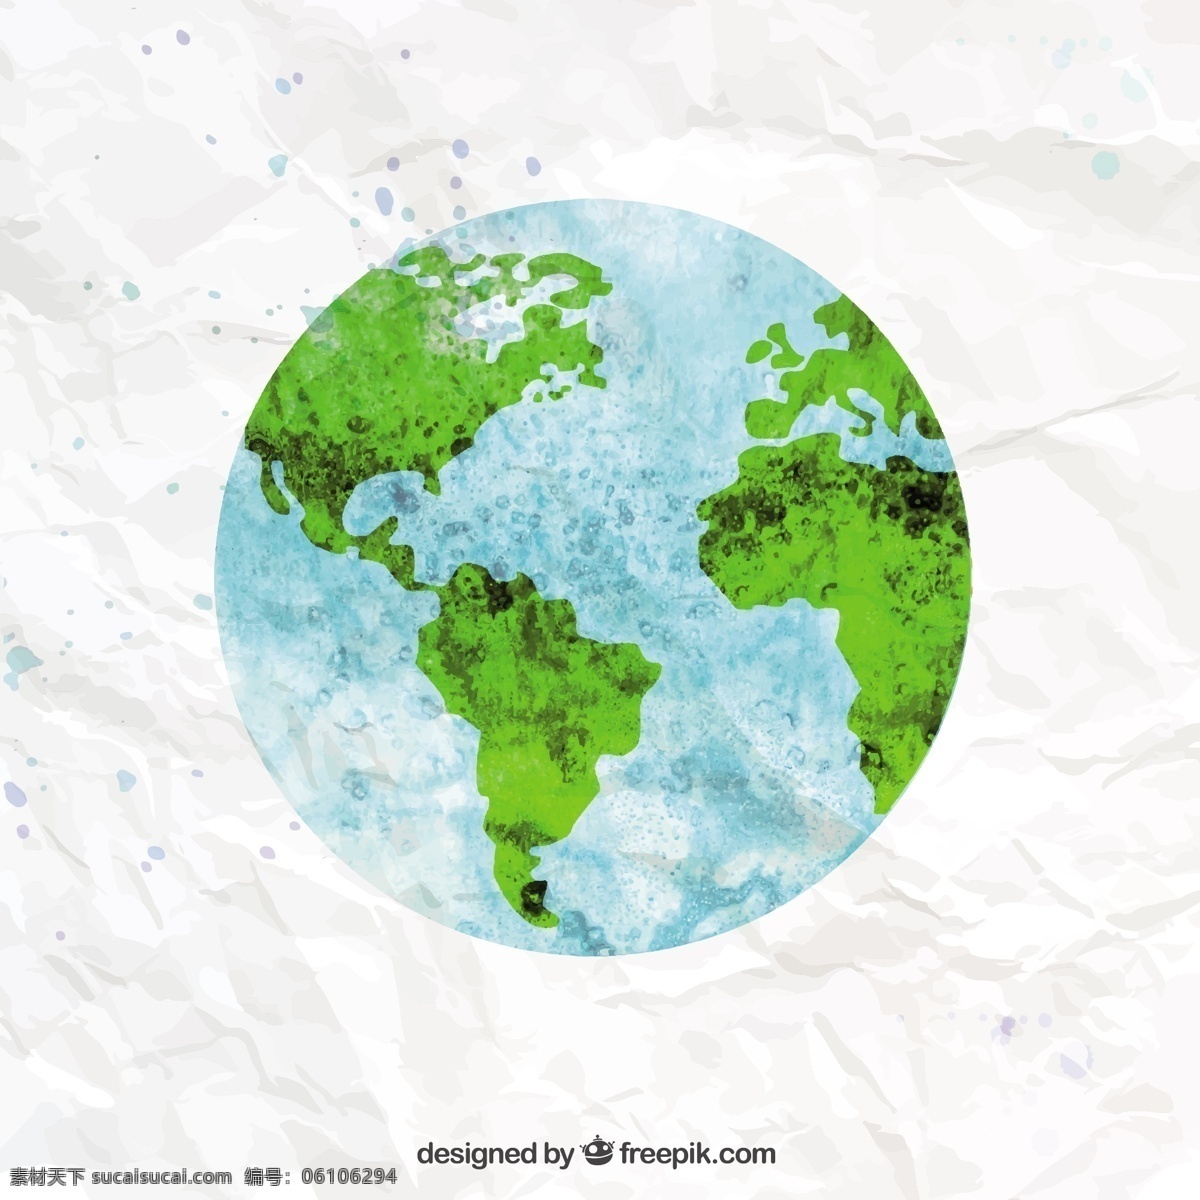 水彩 风格 地球 水彩画 一方面 地图 世界 飞溅 油漆 世界地图 地球仪 油漆飞溅 手画 画的世界 白色